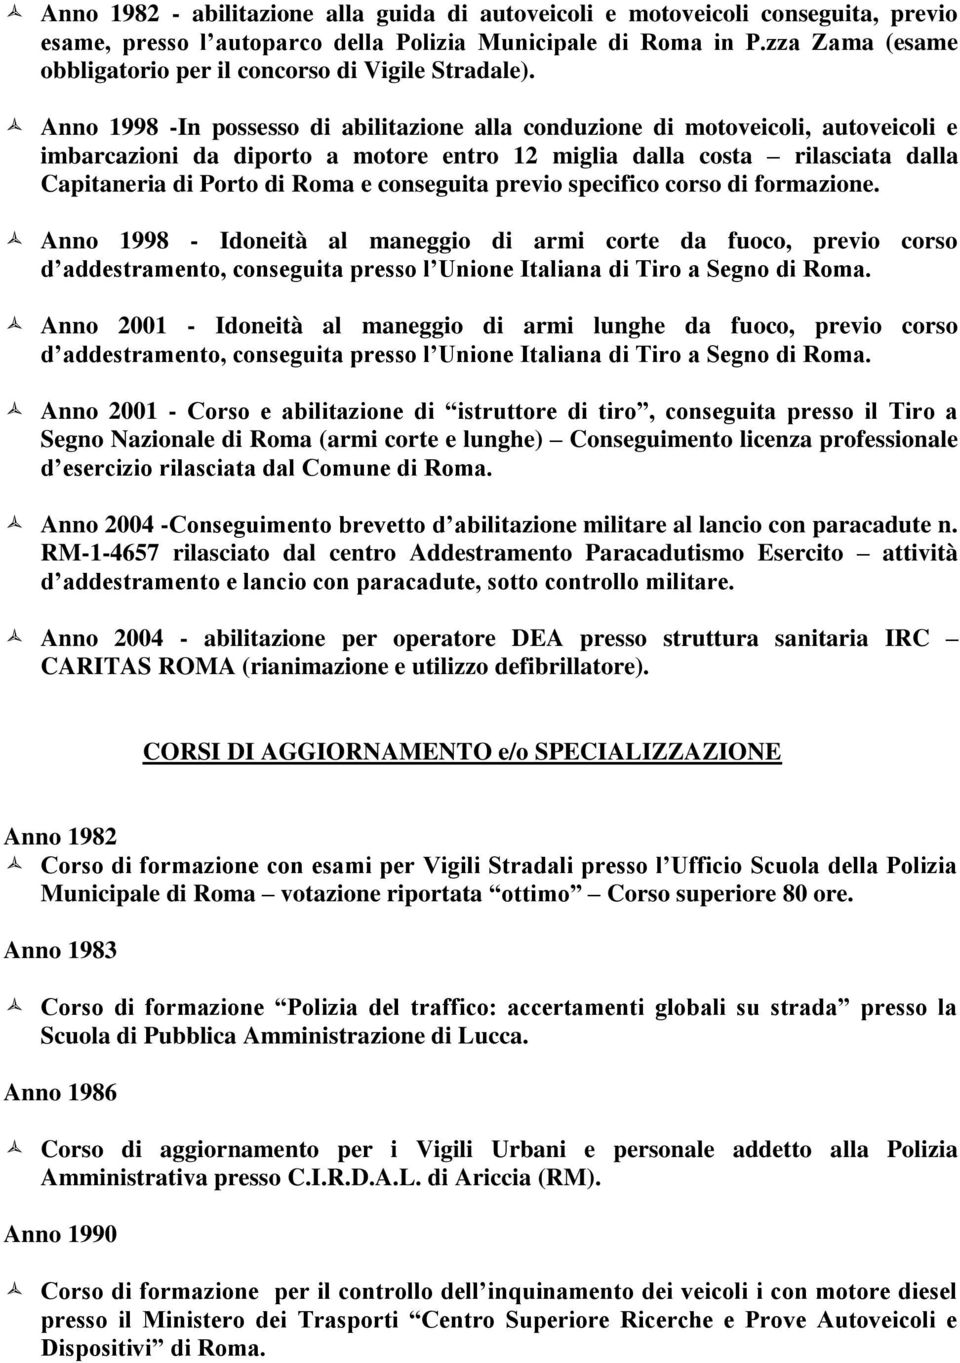 Anno 1998 -In possesso di abilitazione alla conduzione di motoveicoli, autoveicoli e imbarcazioni da diporto a motore entro 12 miglia dalla costa rilasciata dalla Capitaneria di Porto di Roma e